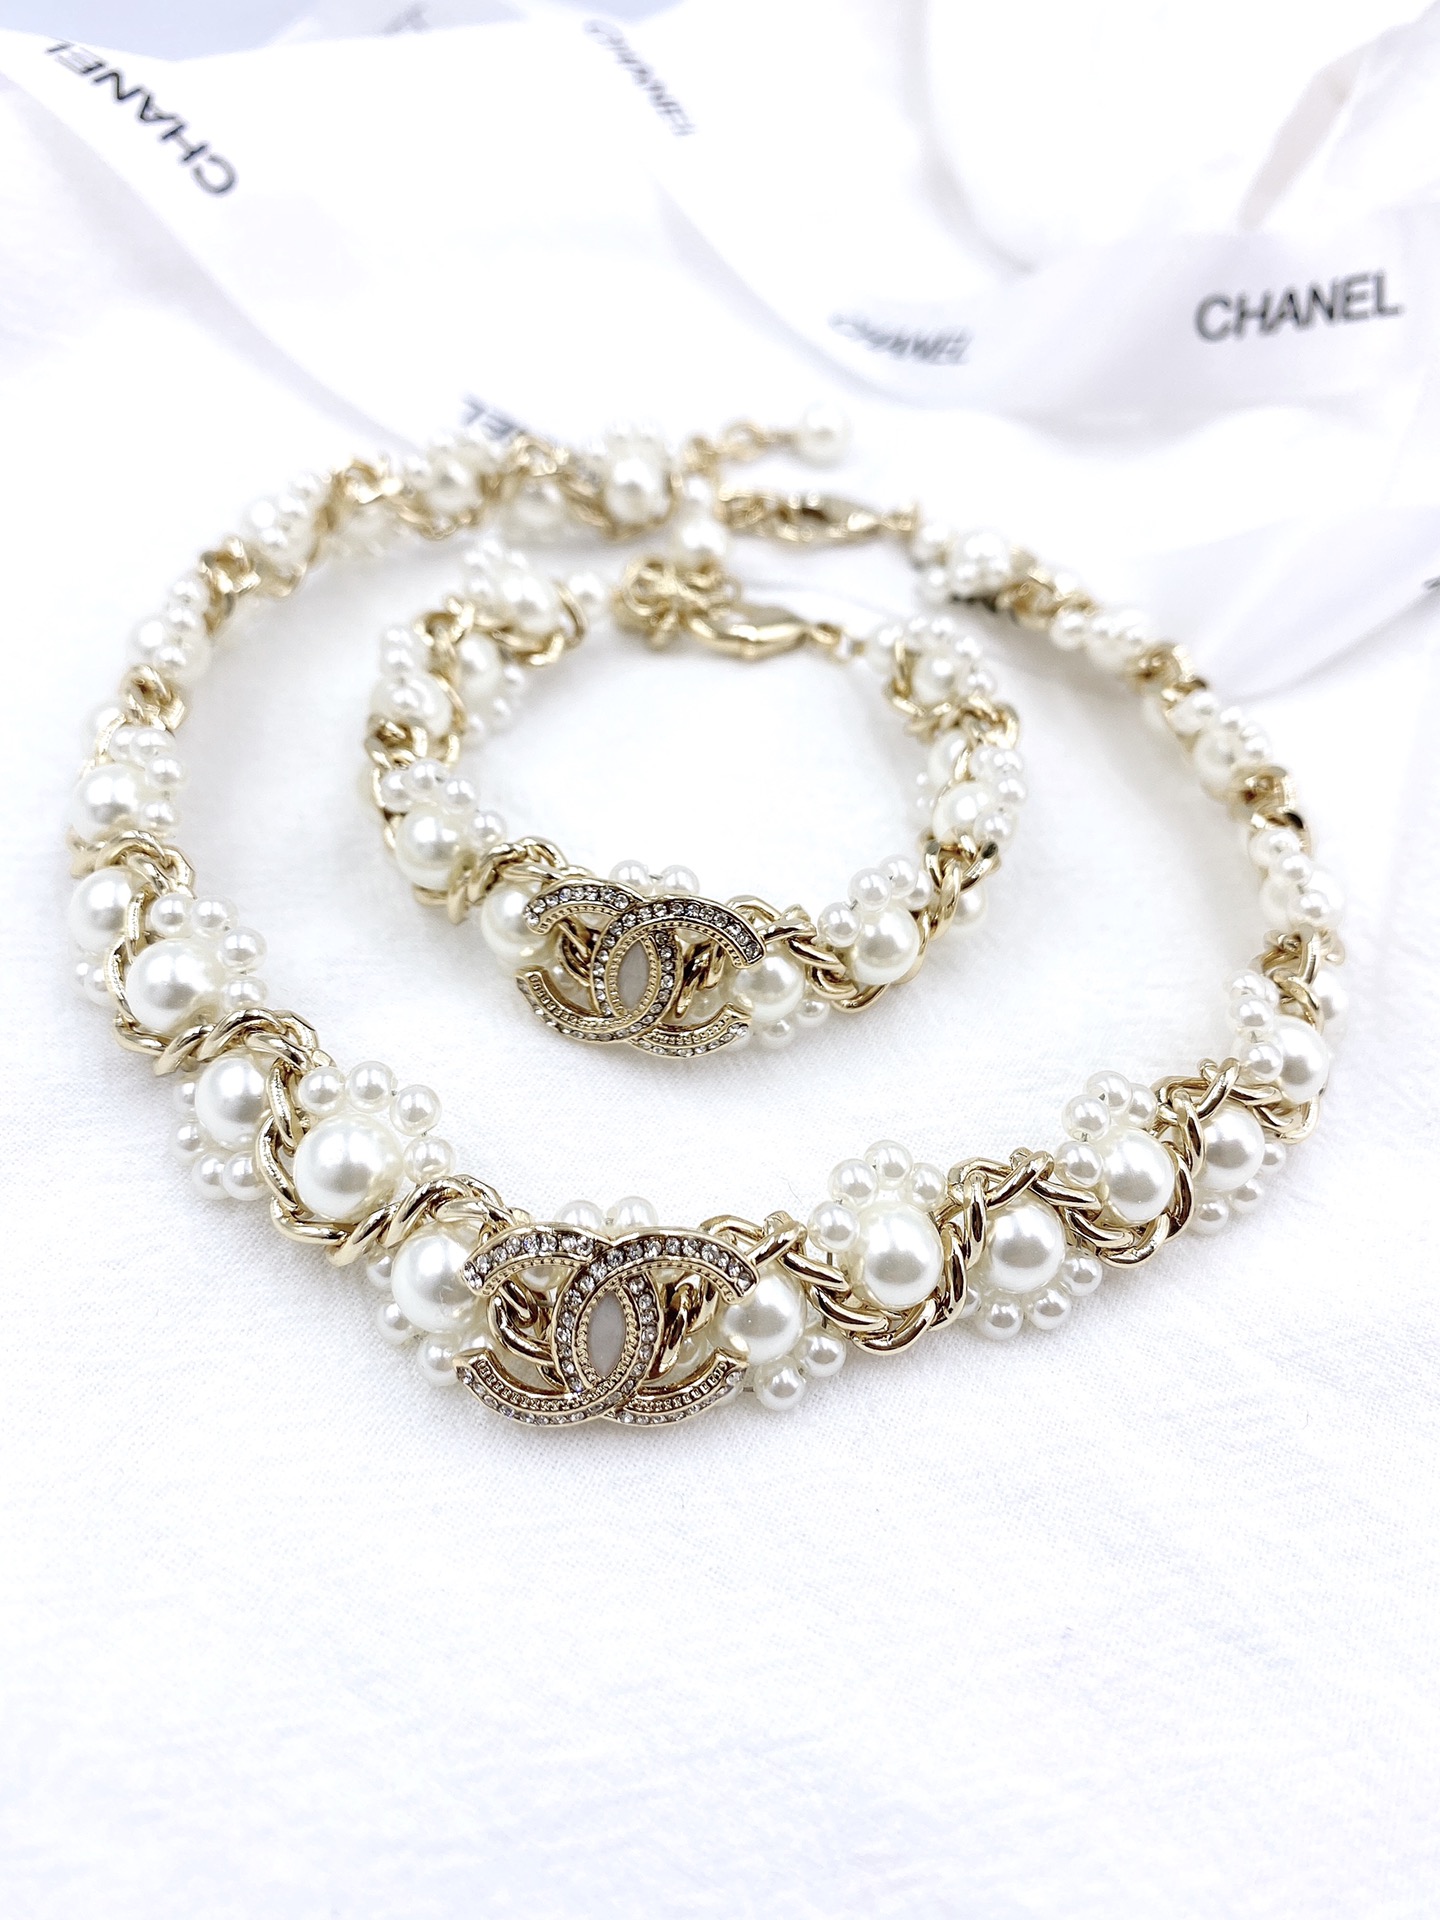 Chanel bracelet necklace choker